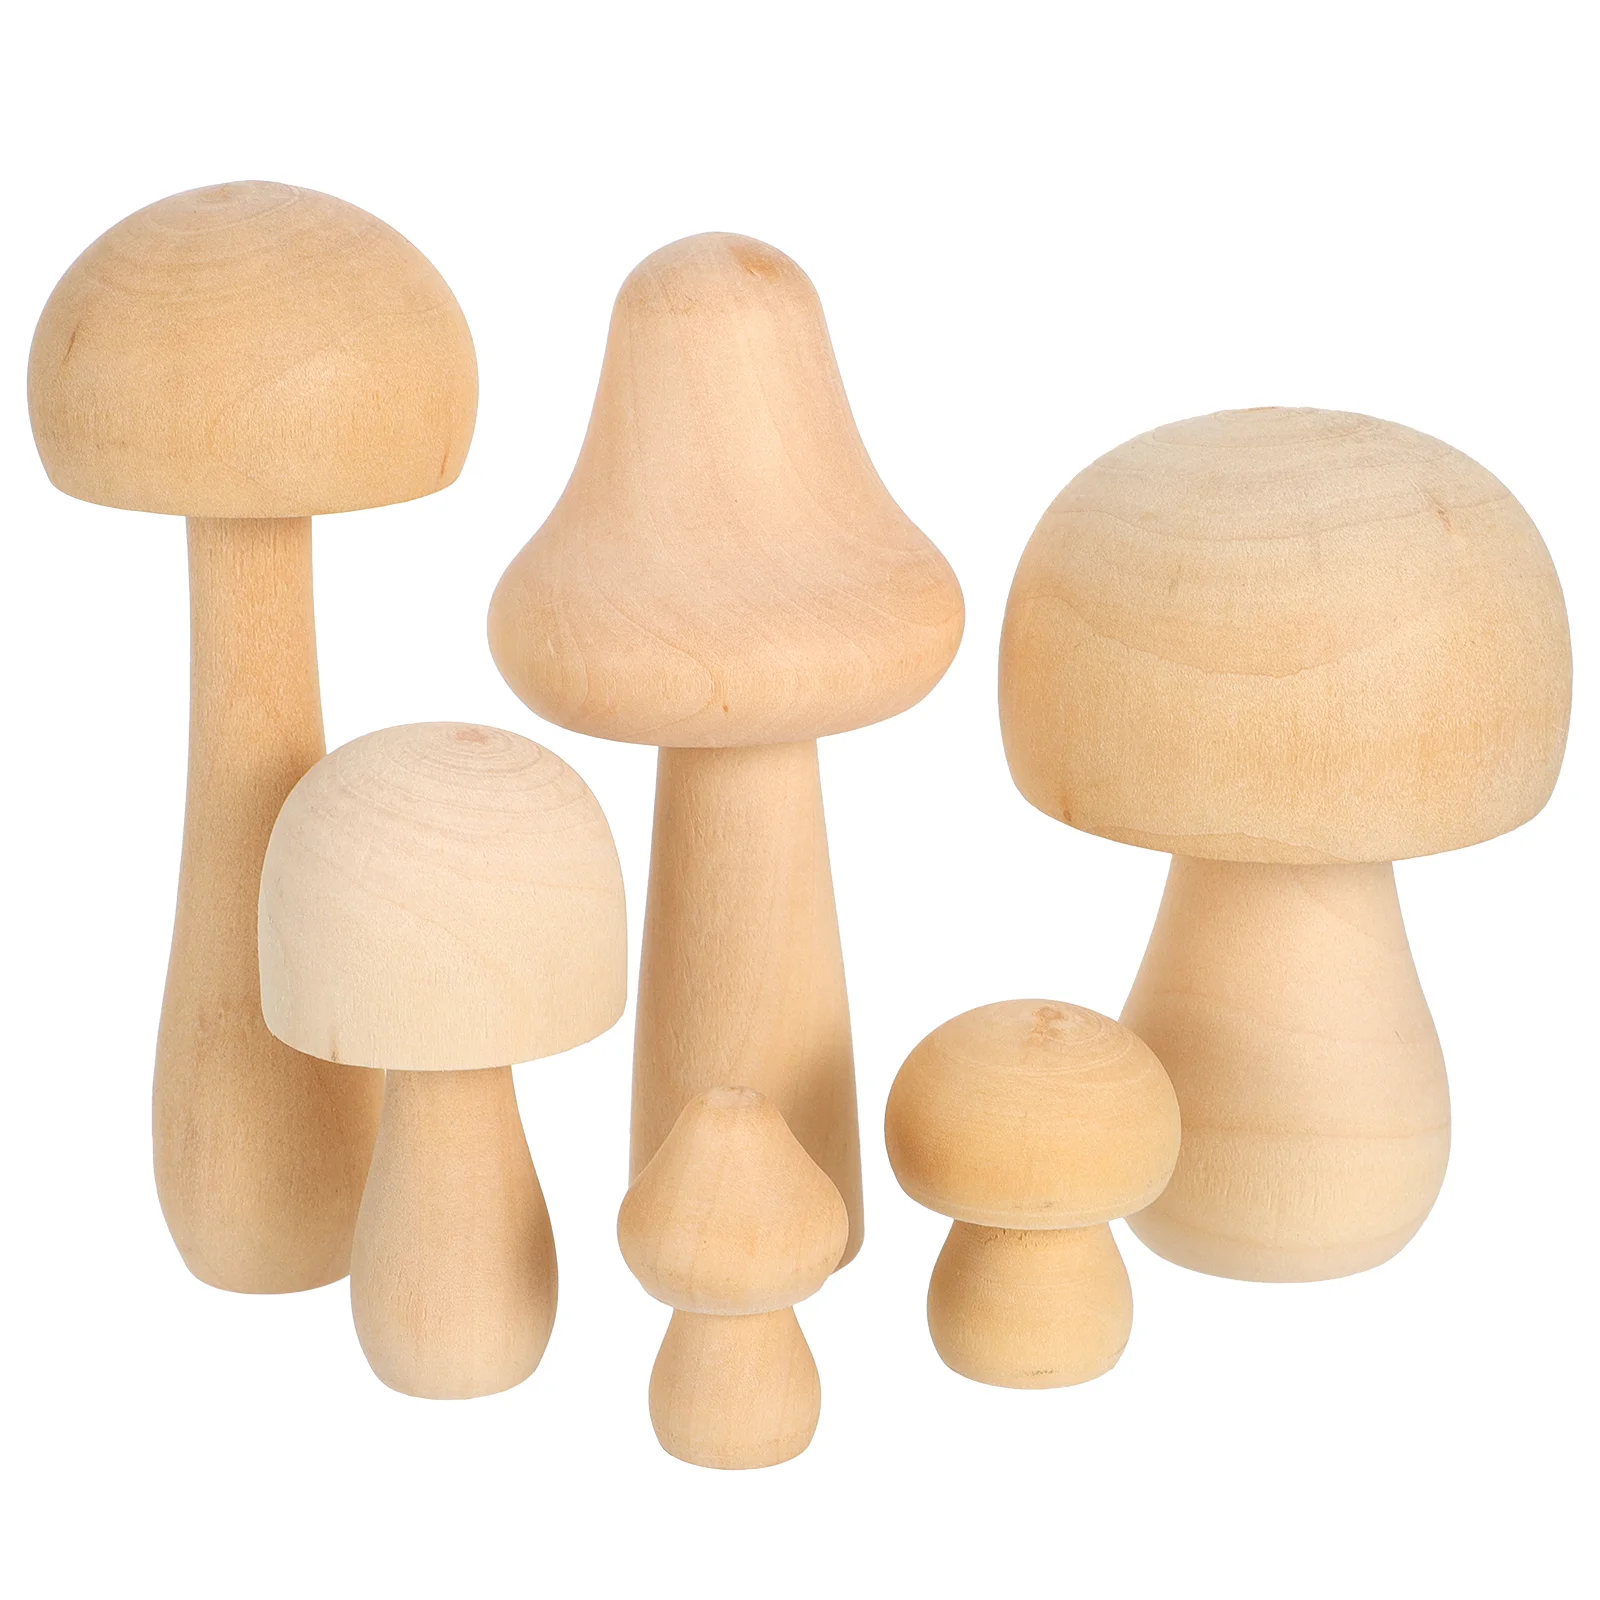 

Фигурки грибов Kidult, 6 шт., деревянные украшения, игрушки Rayan, детские рисунки, белый гриб, необработанные грибы